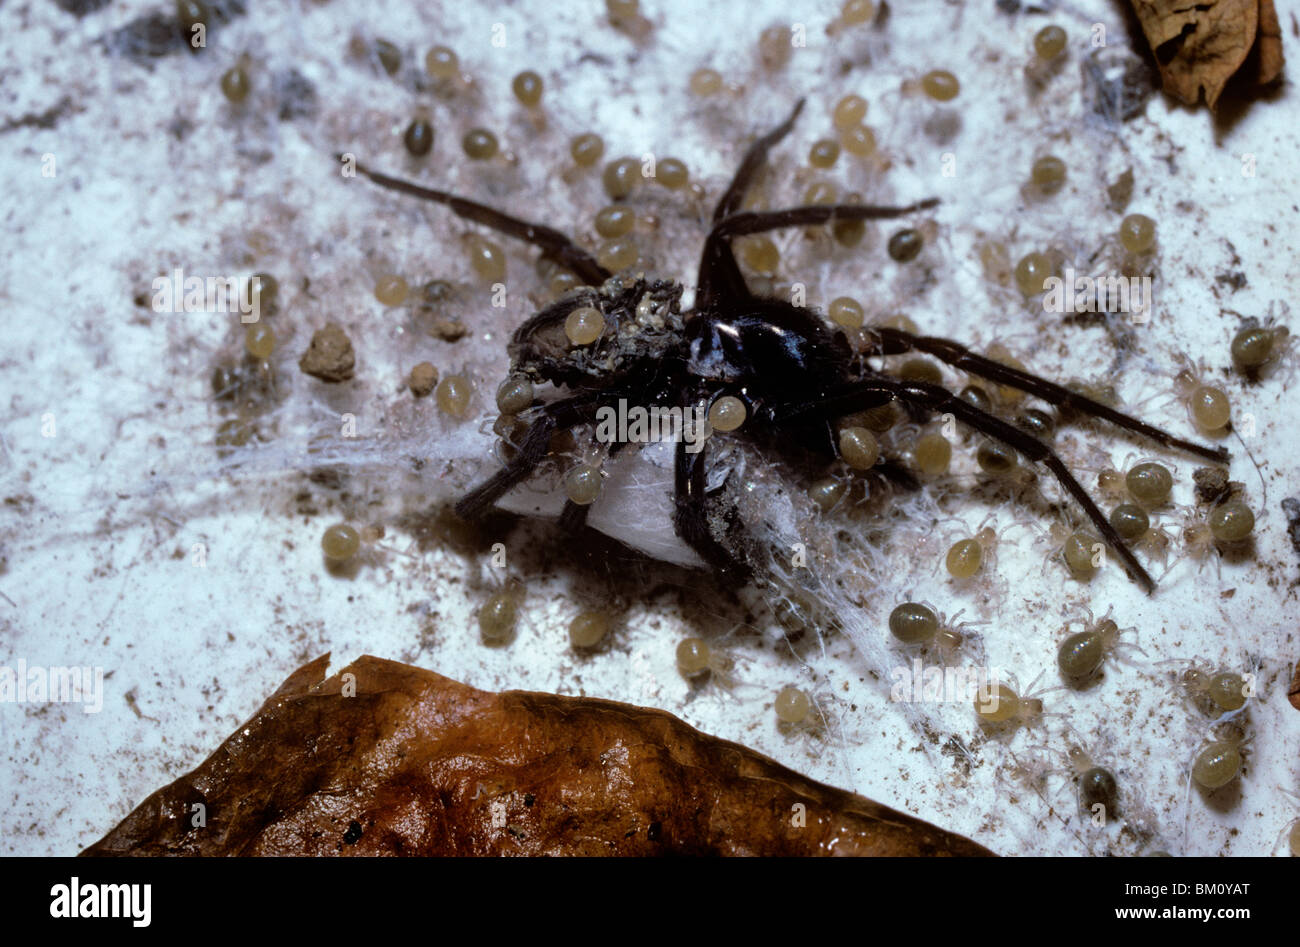 La dentelle noire weaver spider (Amaurobius ferox) l'alimentation des bébés sur le cadavre de leur mère décédée récemment (gerontophagy), Royaume-Uni Banque D'Images